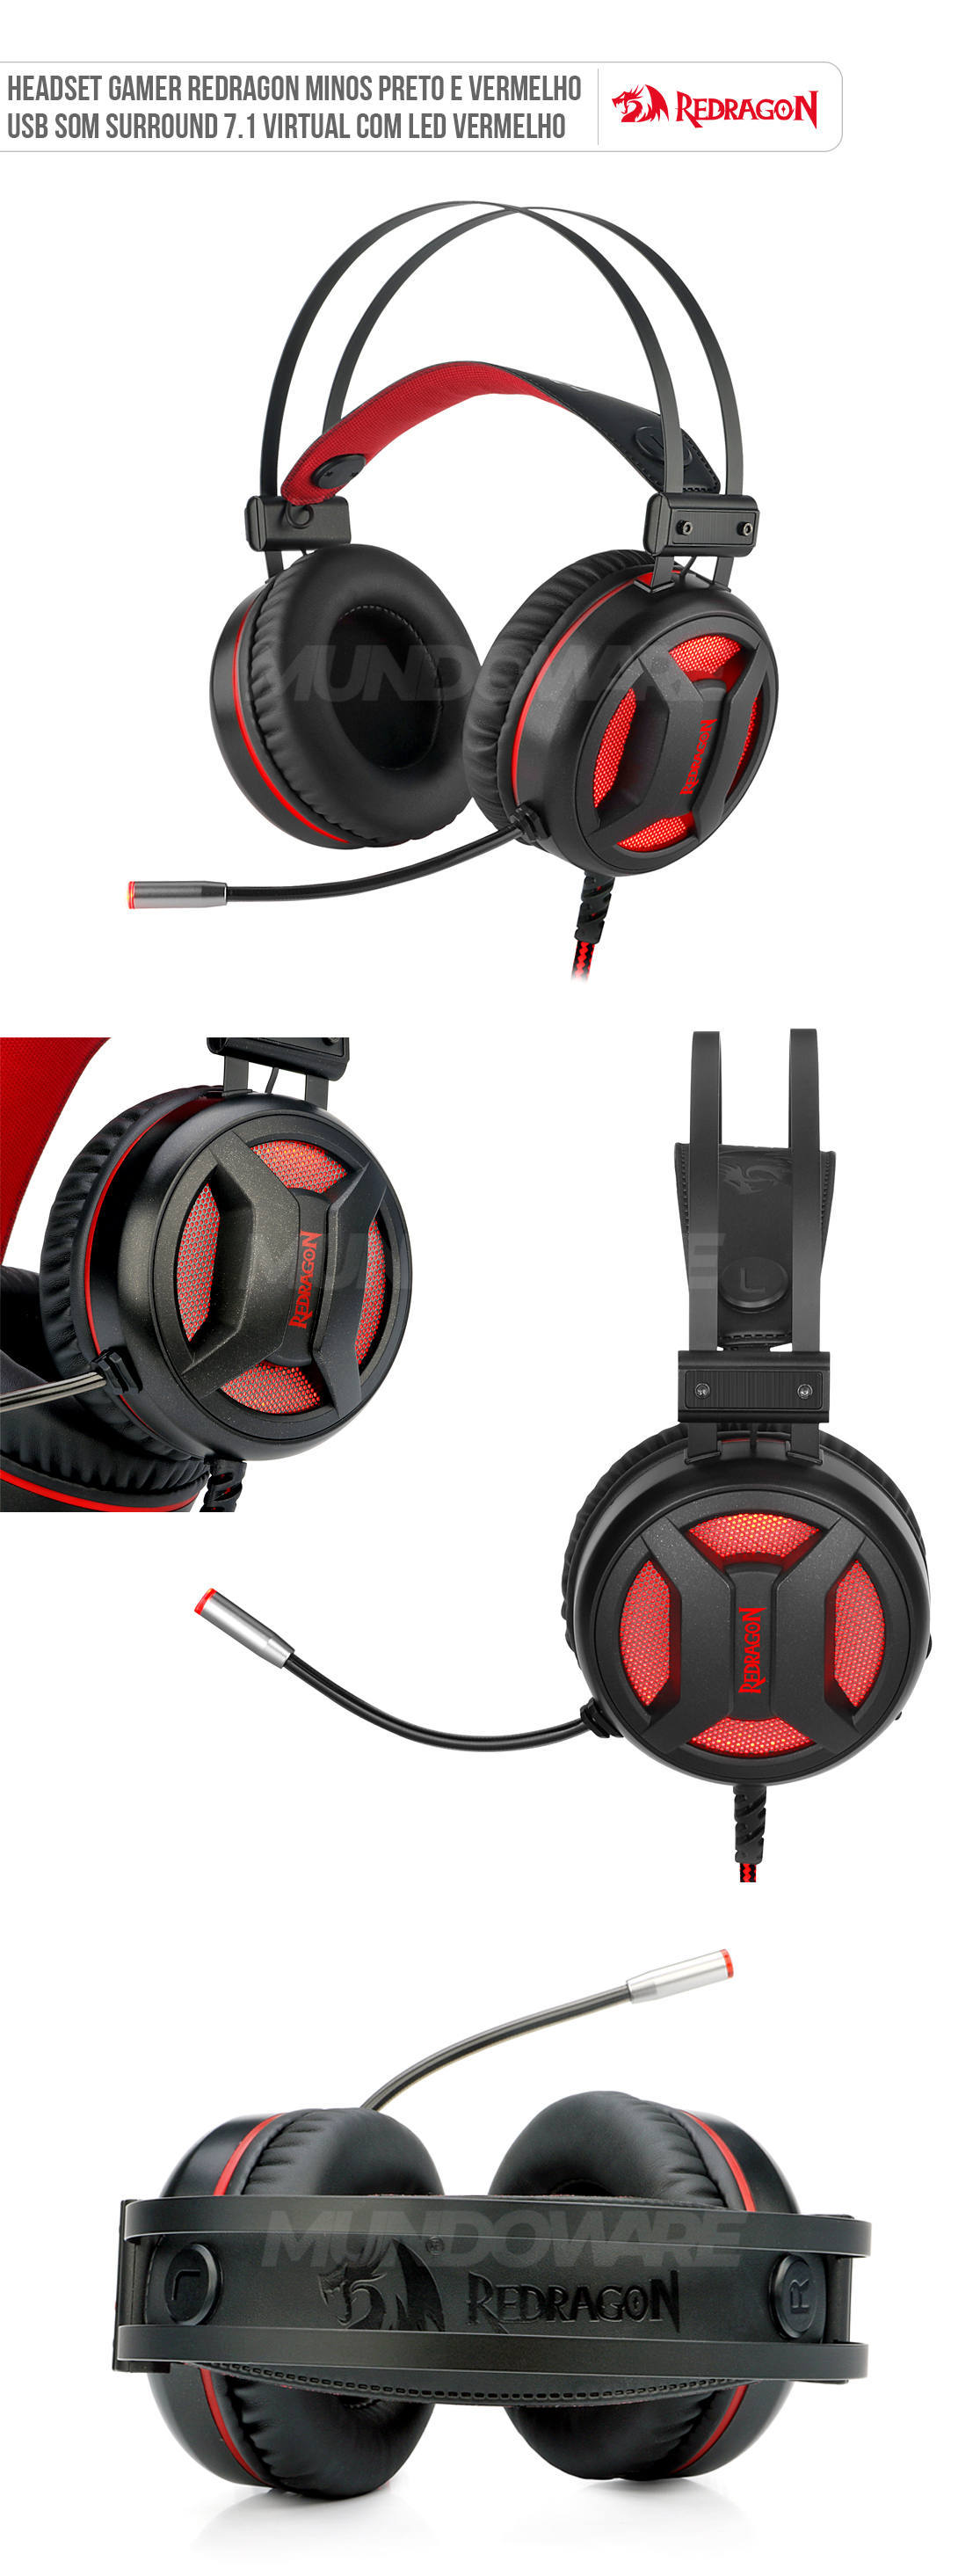 Headset Gamer Redragon Minos H210 Preto USB Driver 50mm Som Surround 7.1 com LED Vermelho